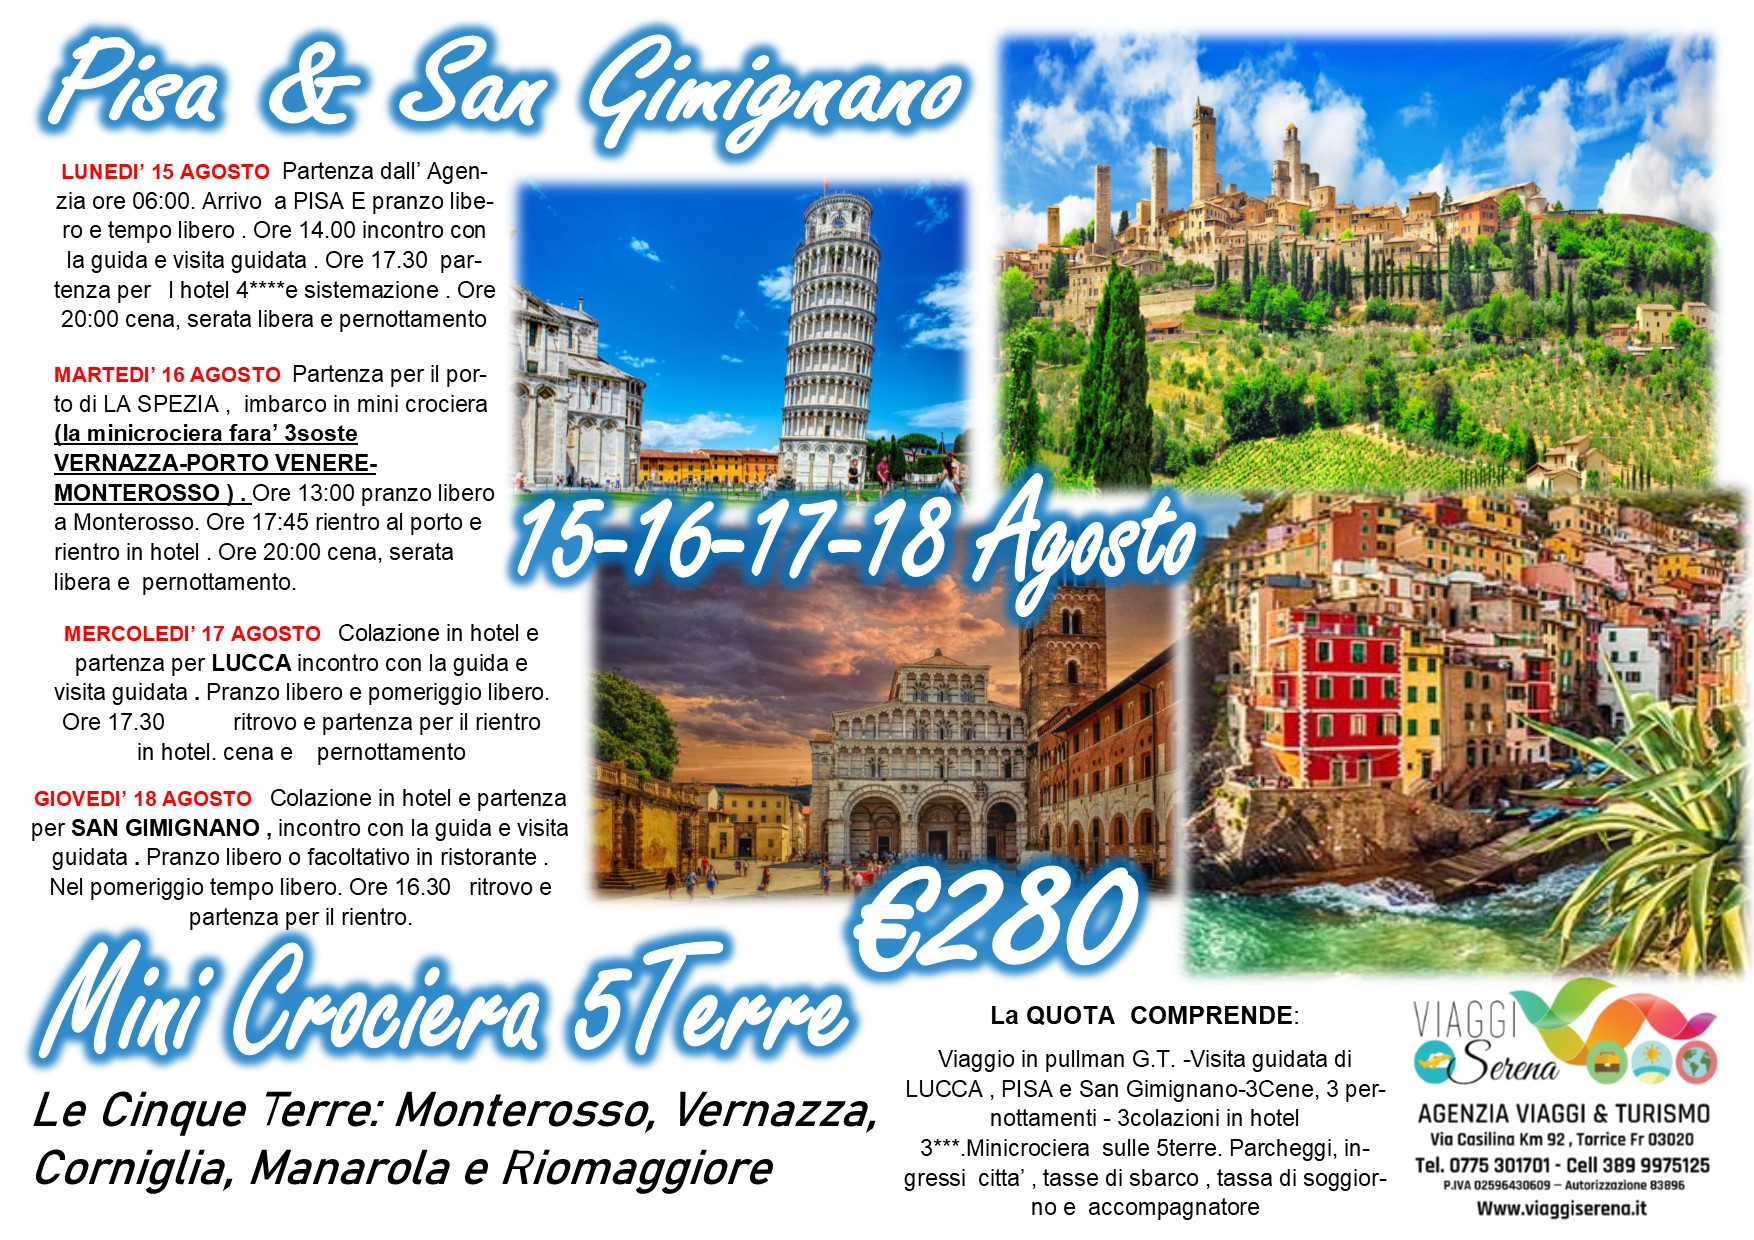 Viaggi di Gruppo: Pisa , San Gimignano , Lucca & Mini Crociera Cinque Terre 15-16-17-18 Agosto €280,00